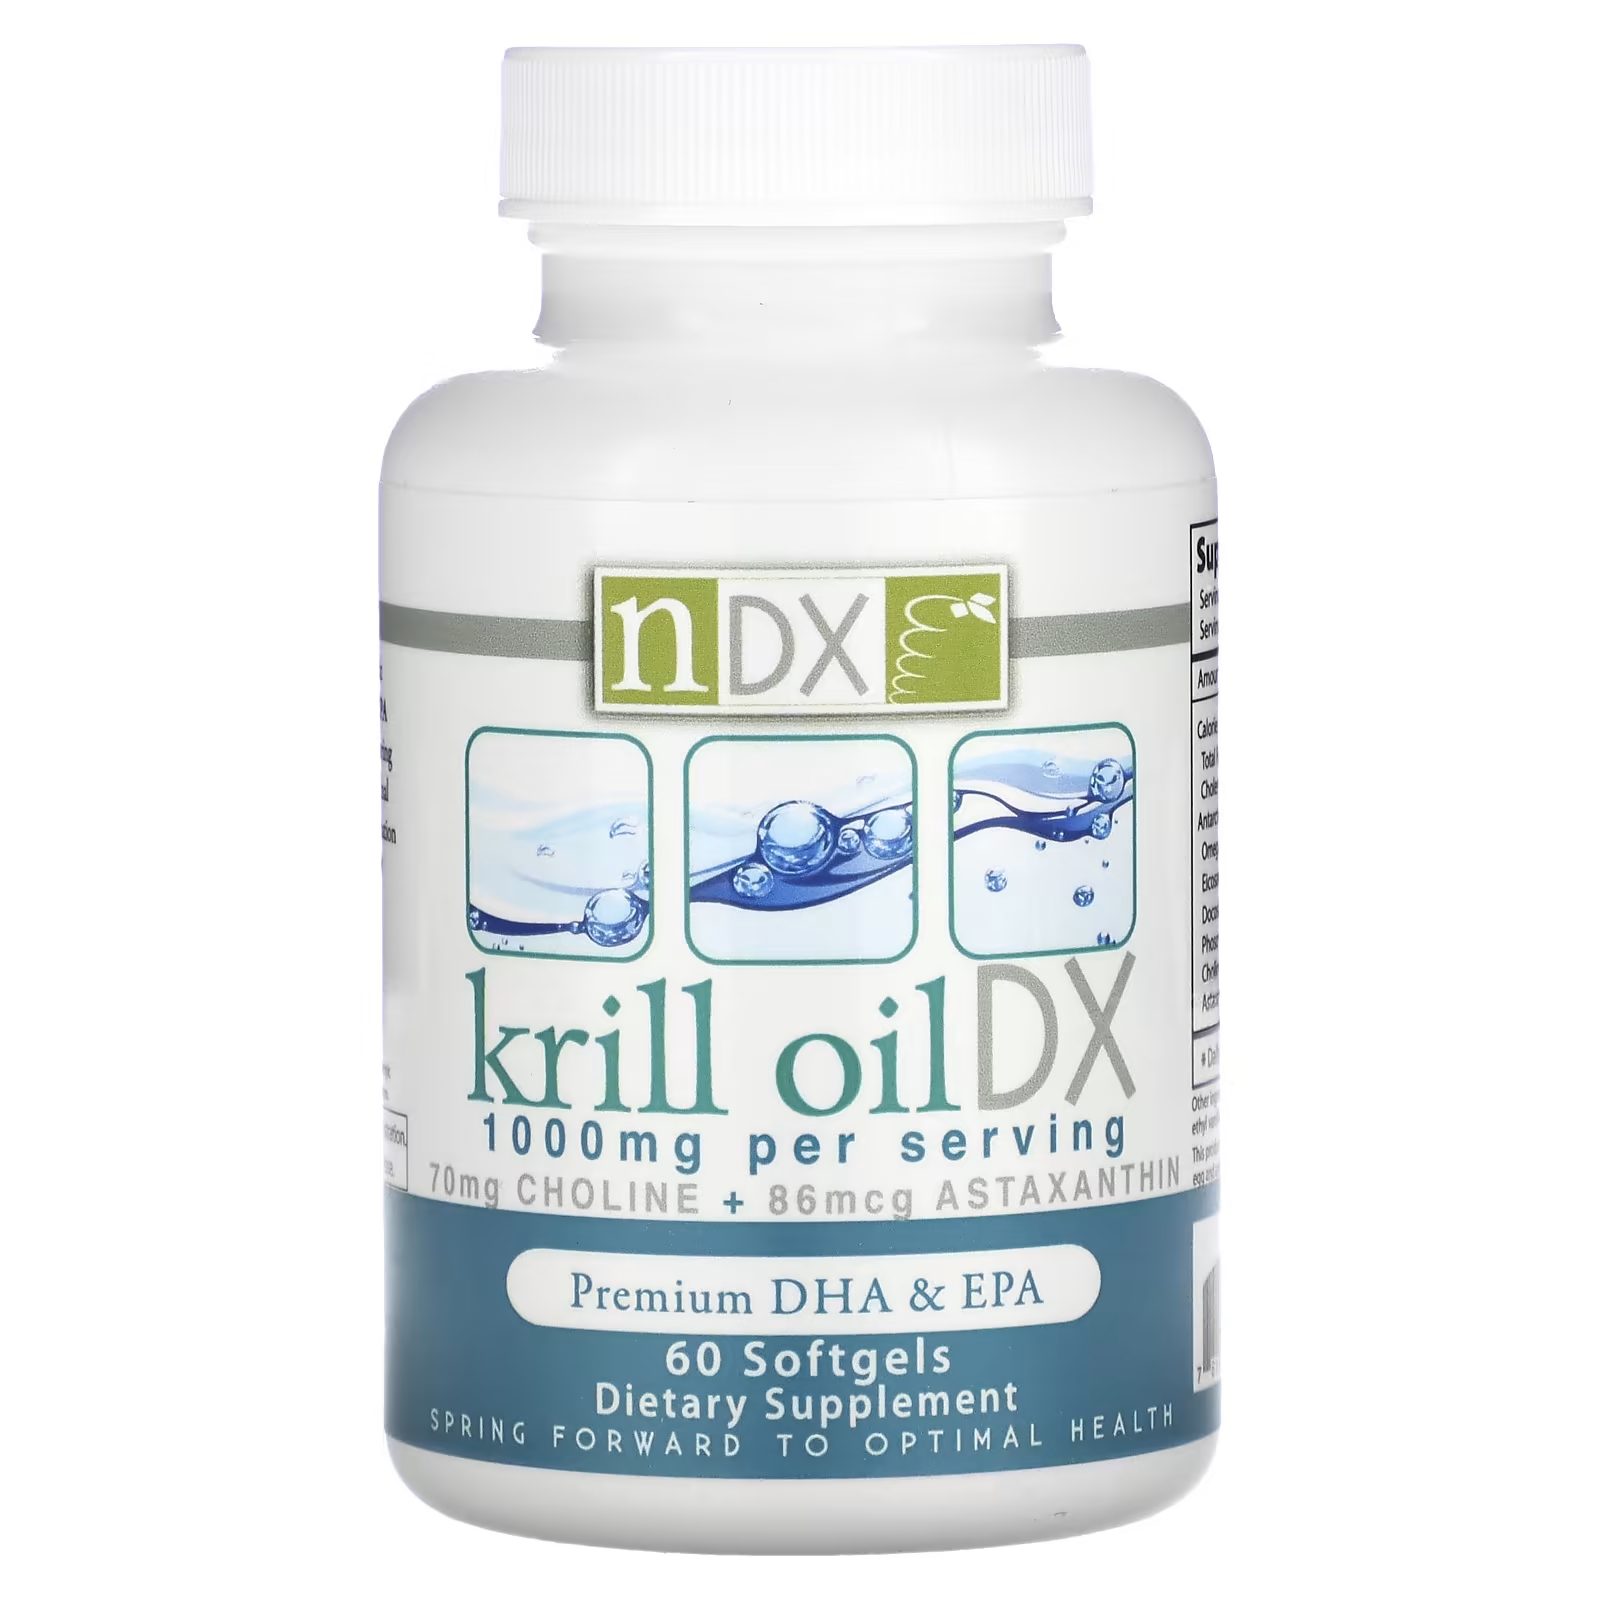 цена Пищевая добавка Natural Dynamix Krill Oil DX Premium DHA и EPA 1000 мг, 60 мягких таблеток